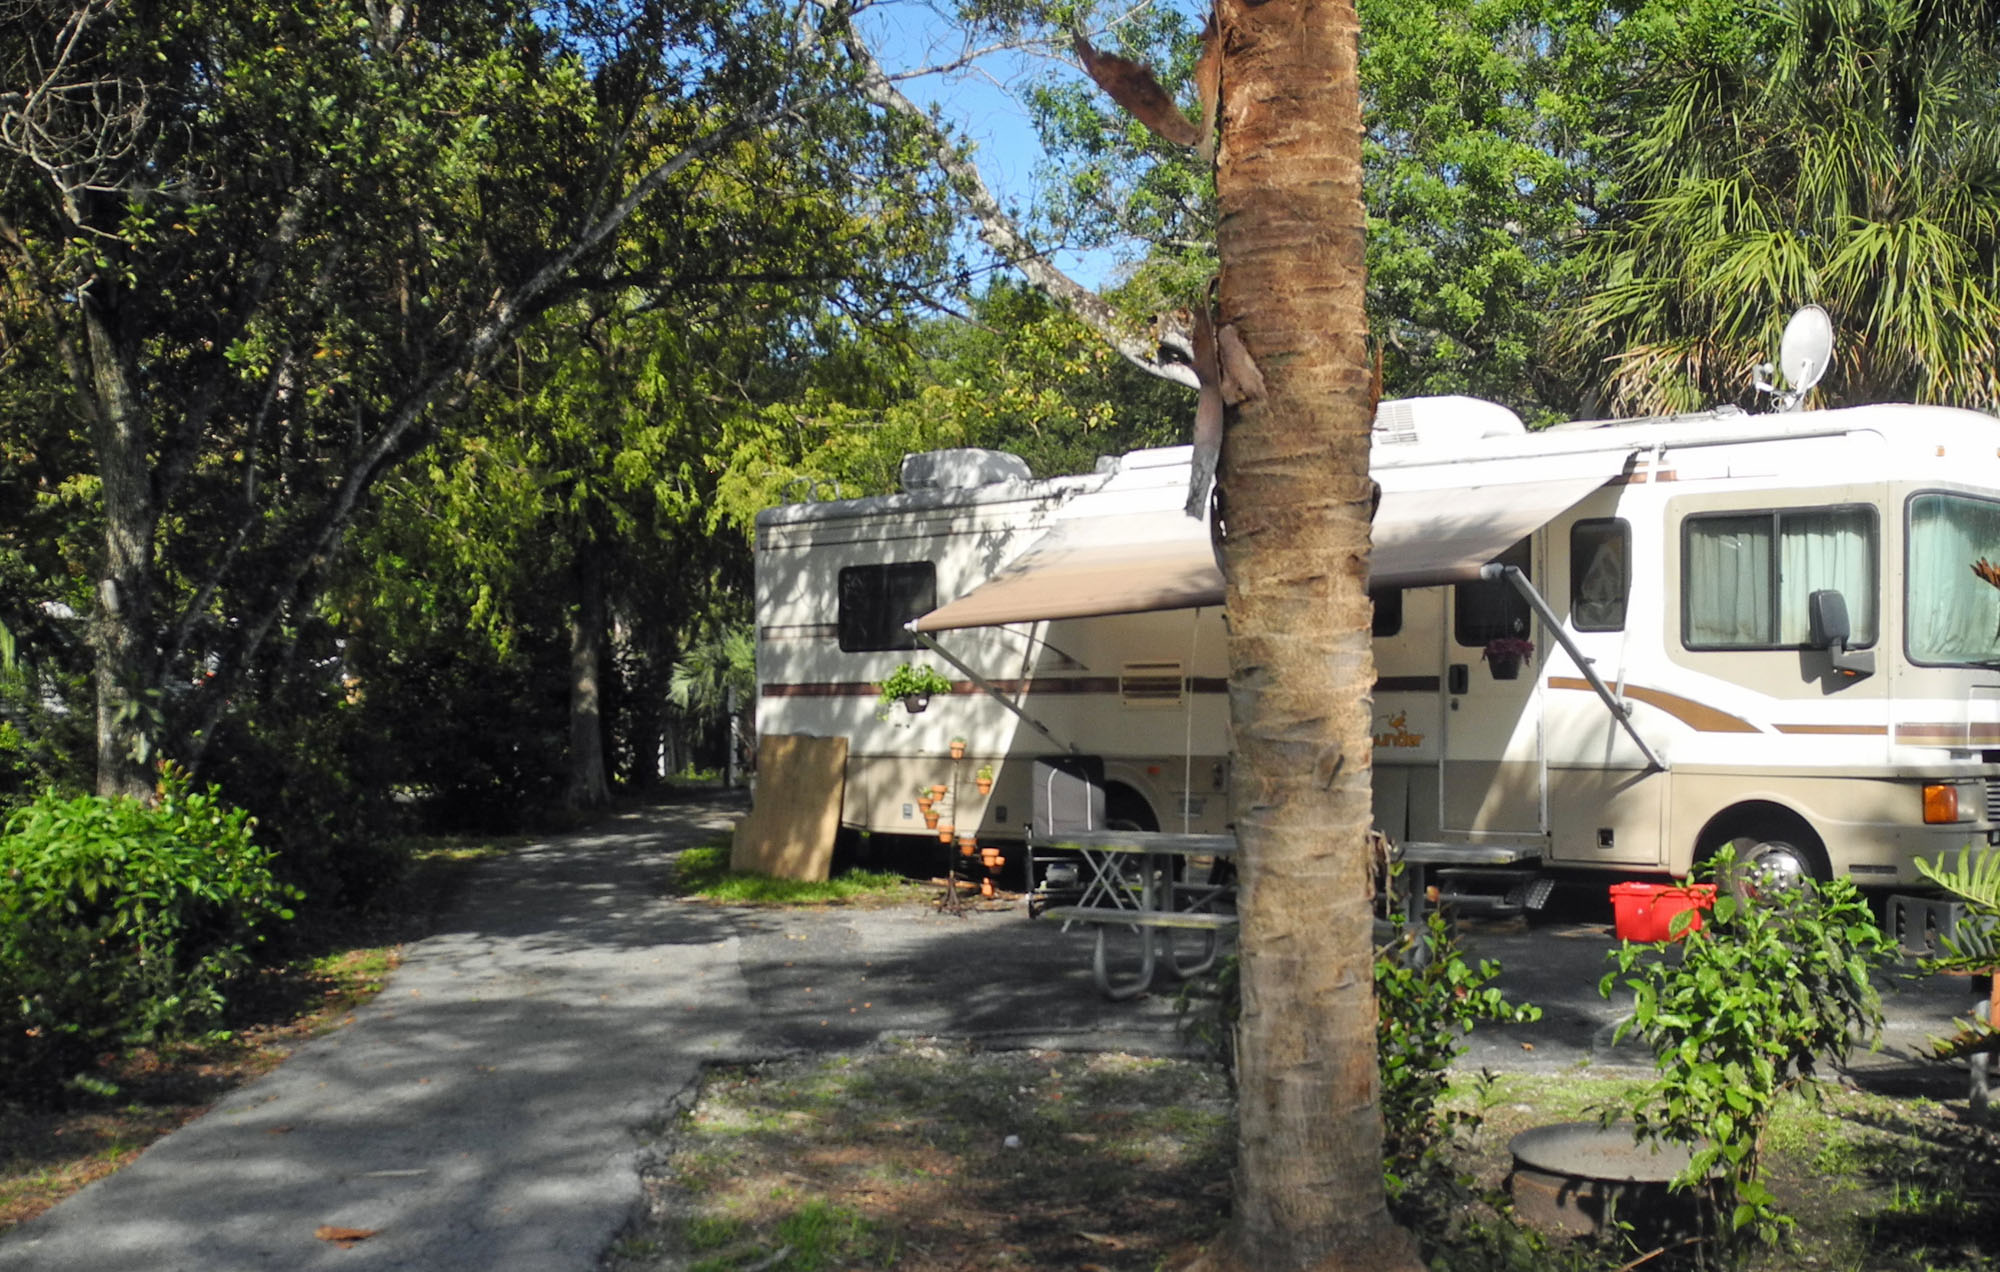 El mejor camping en los parques públicos del sur de Florida